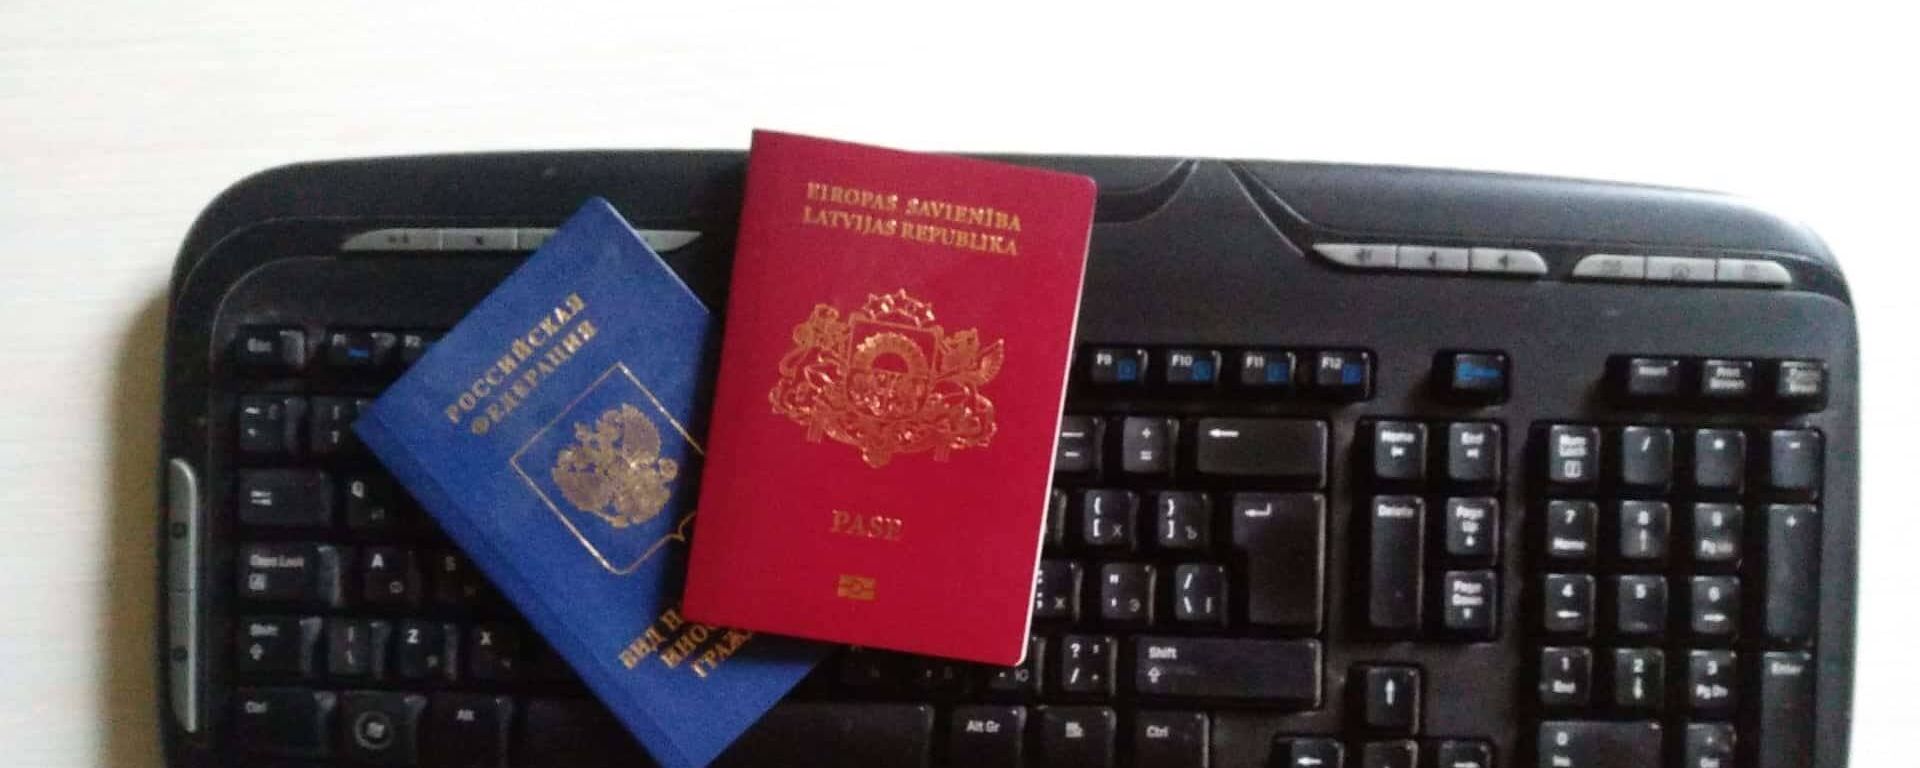 Паспорт гражданина Латвийской республики и вид на жительство иностранного гражданина РФ - Sputnik Латвия, 1920, 28.07.2021